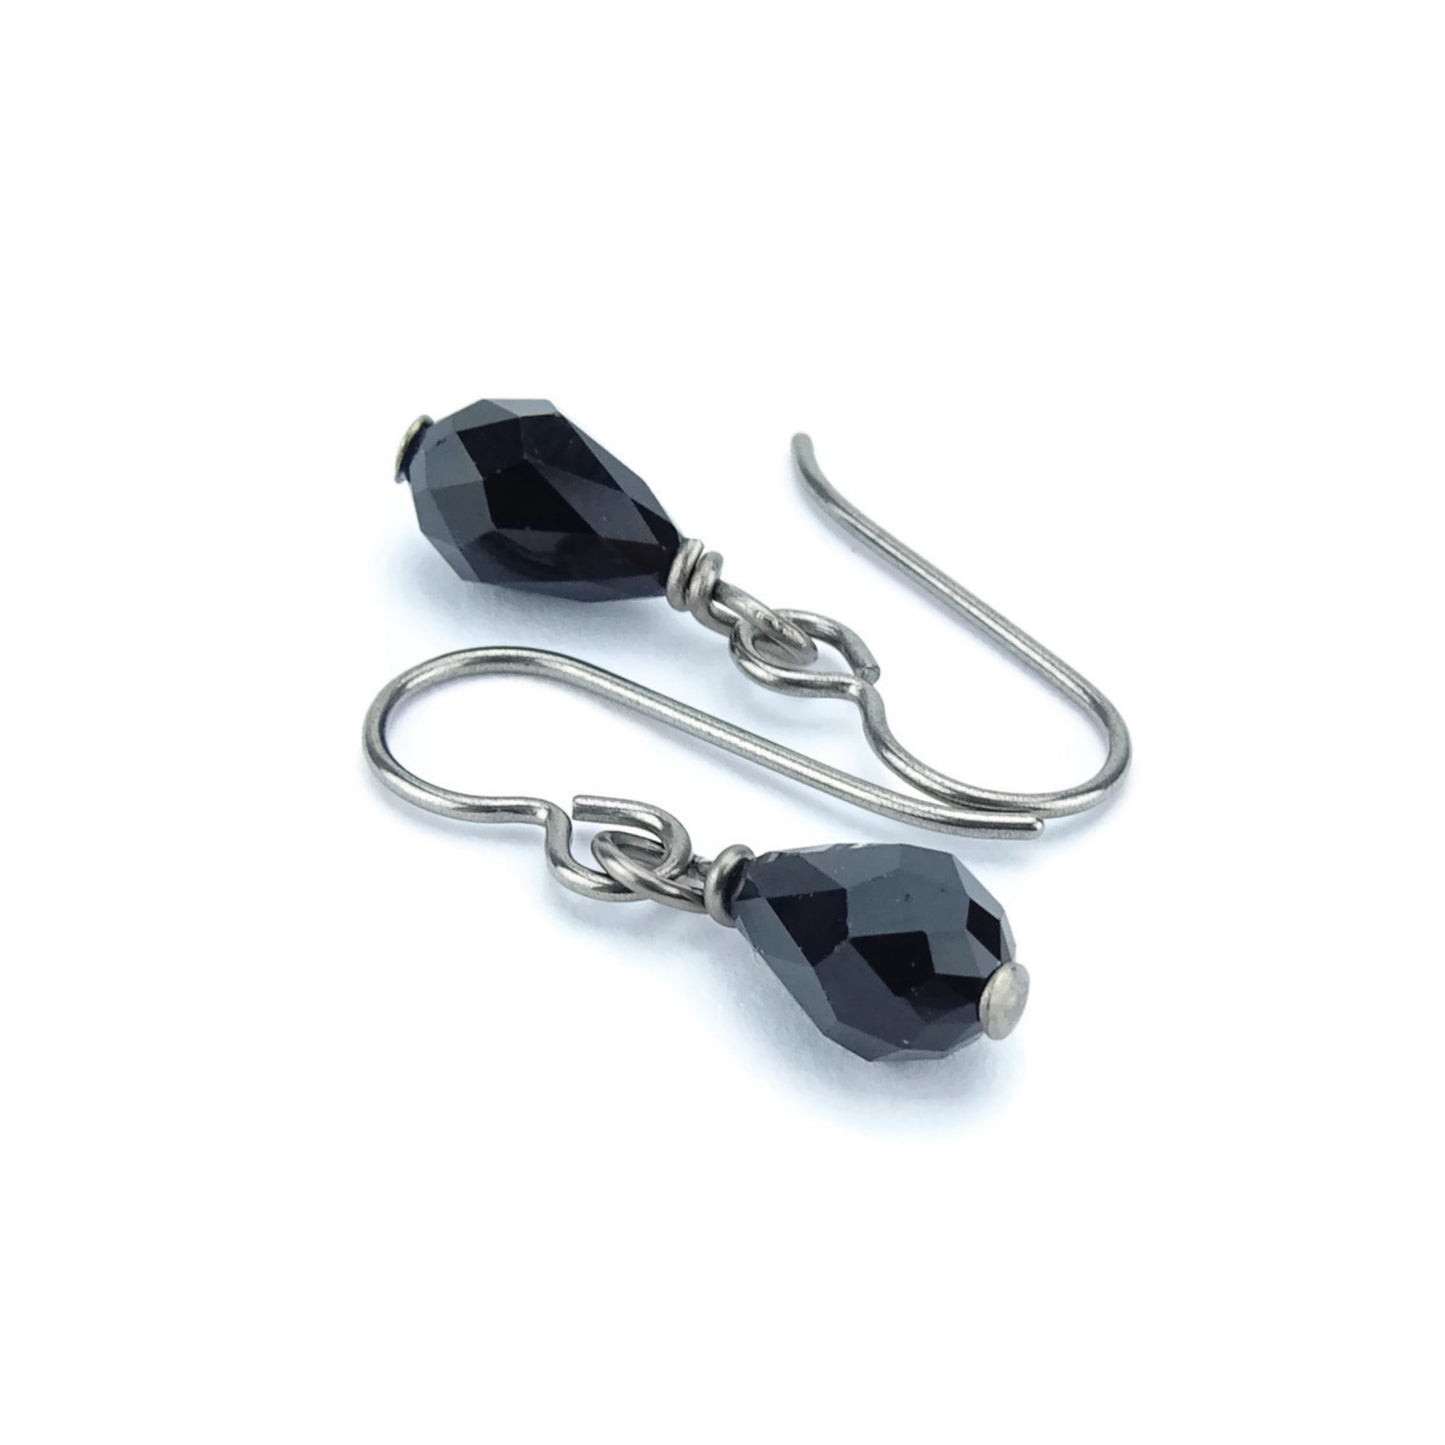 Black Teardrop Niobium Earrings, Jet Black Swarovski Crystal Drop Earrings, Hypoallergenic Nickel Free Titanium Earrings for Sensitive Ears